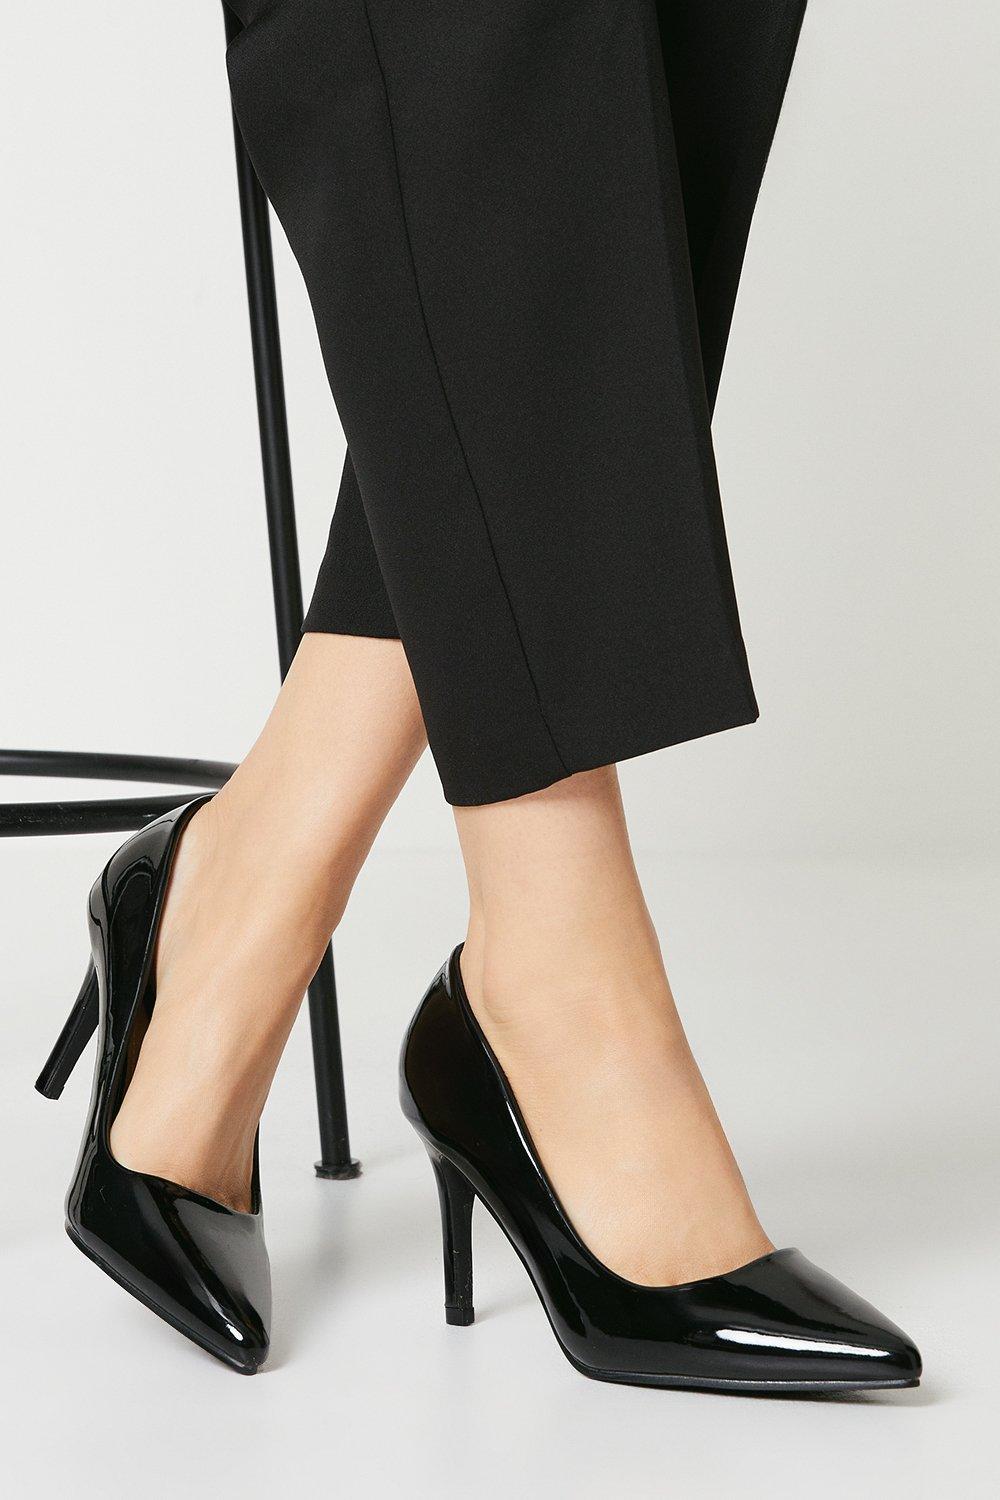 Women's Darlene High Heel Pointed Court Shoes - true black - 7